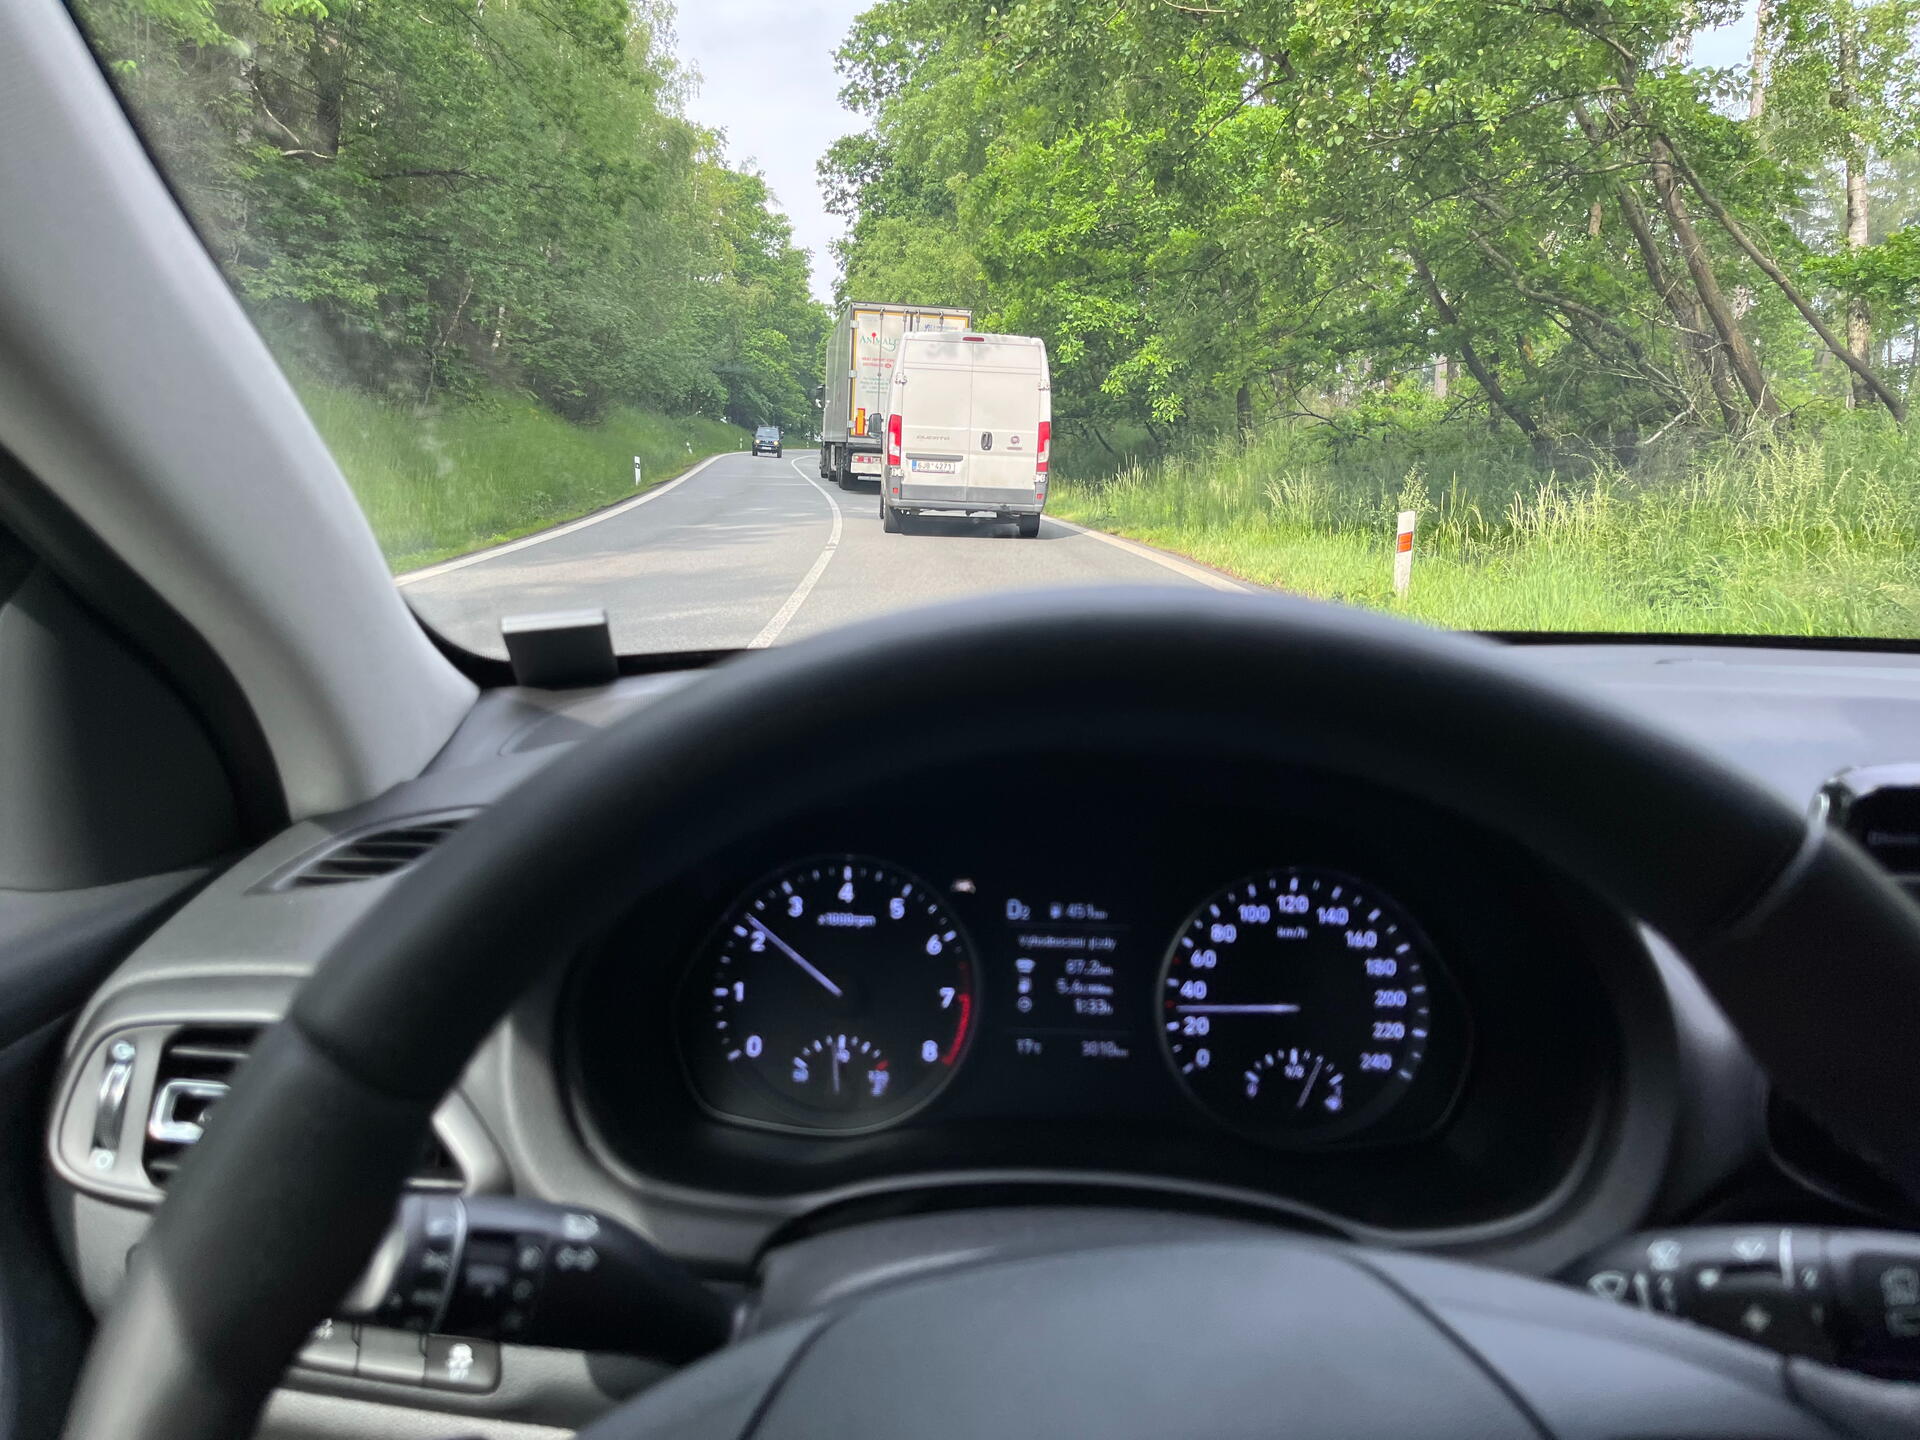 Realita velké části českých silnic – většinu času se prostě plazíte za kamionem